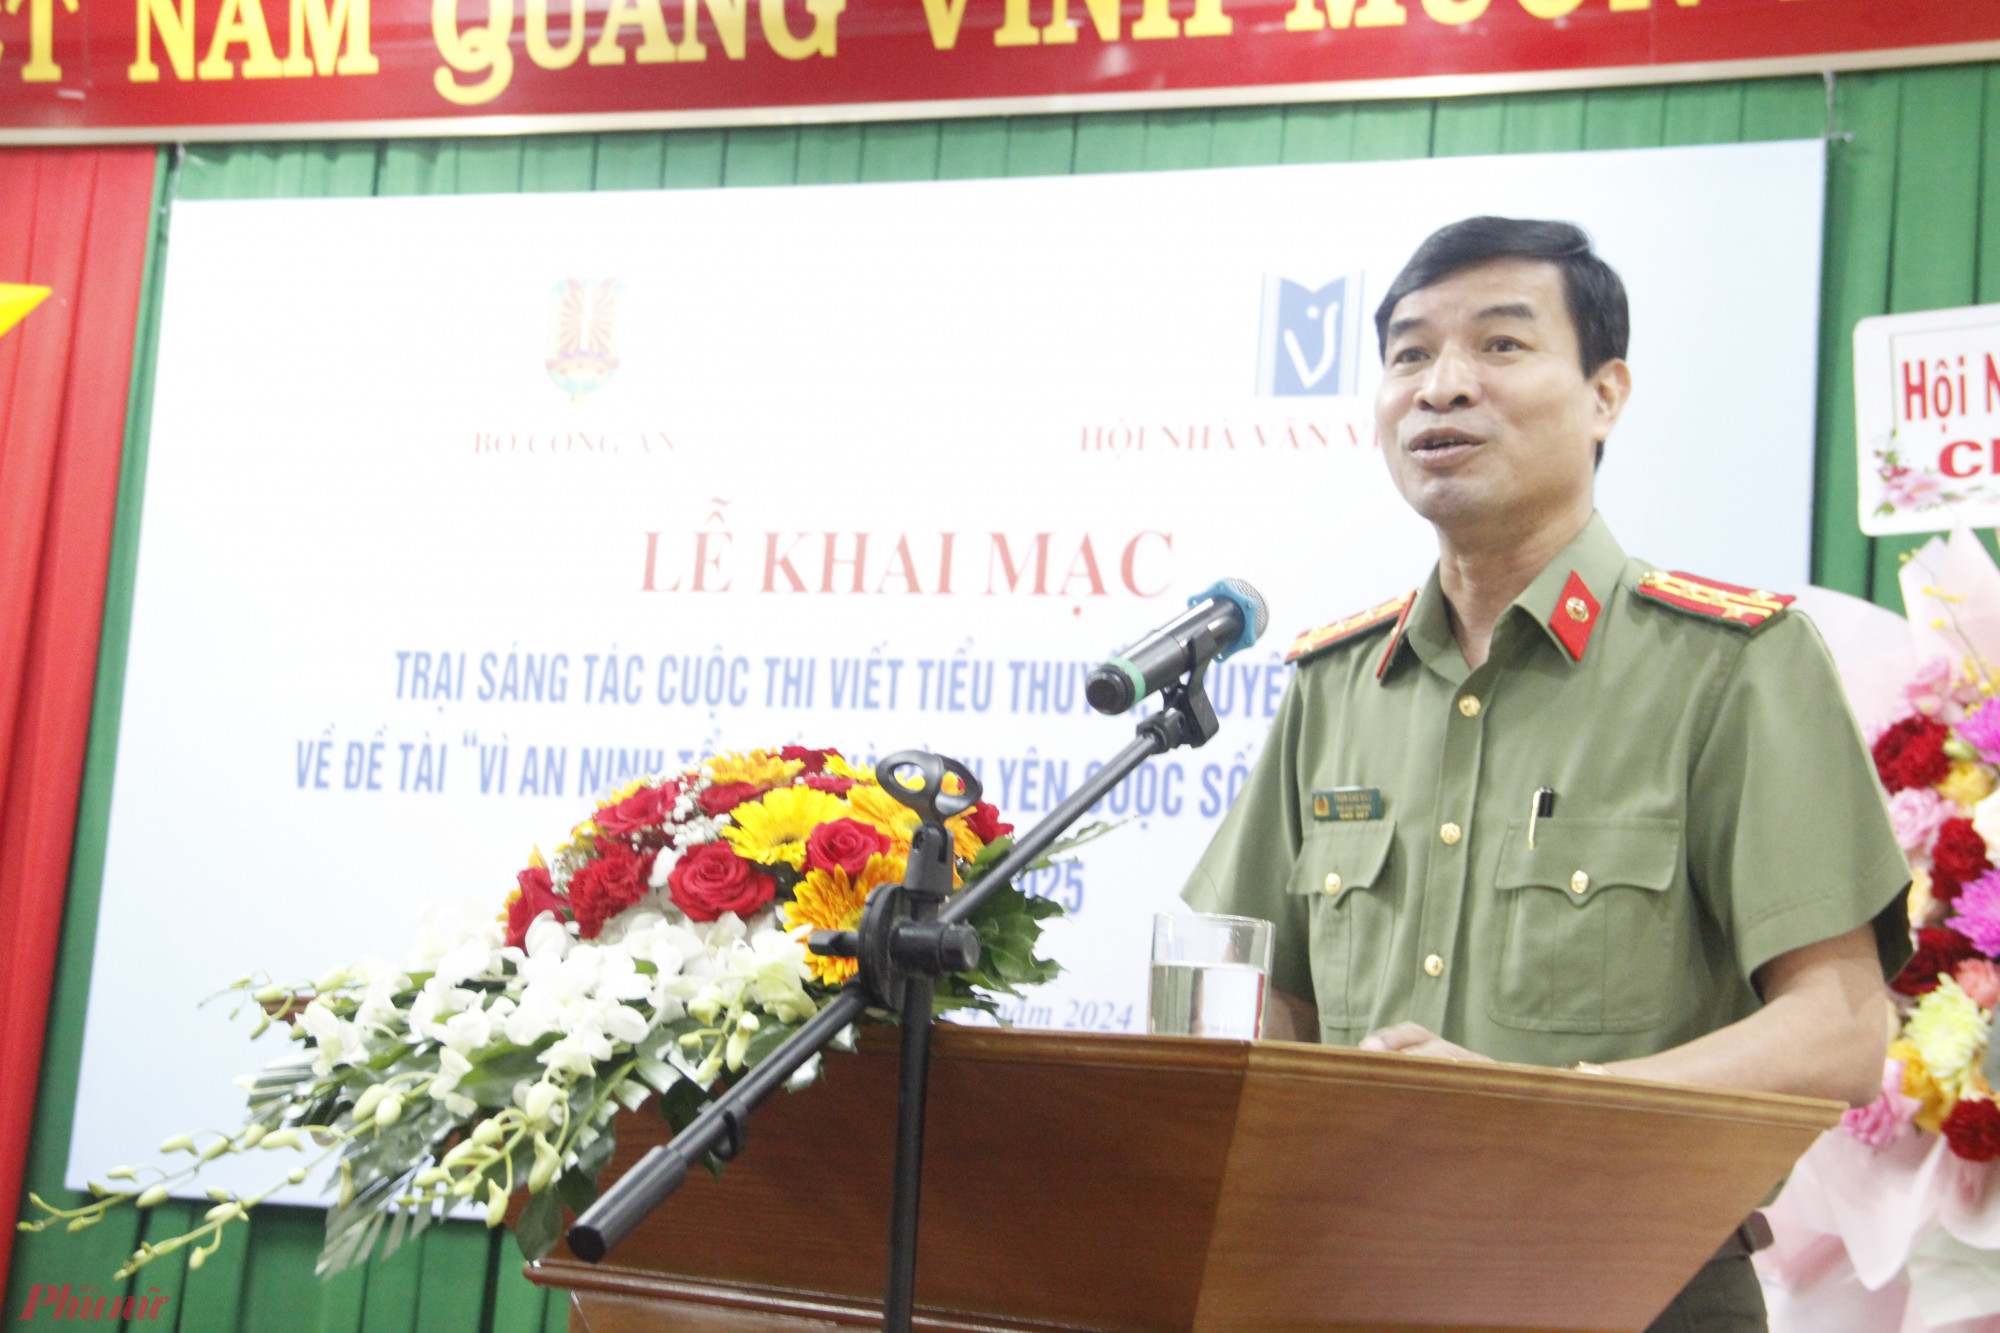 Đại tá Trần Cao Kiều – Phó Cục trưởng Cục truyền thông CAND; Giám đốc, Tổng biên tập Nhà xuất bản CAND – phát biểu khai mạc trại sáng tác.